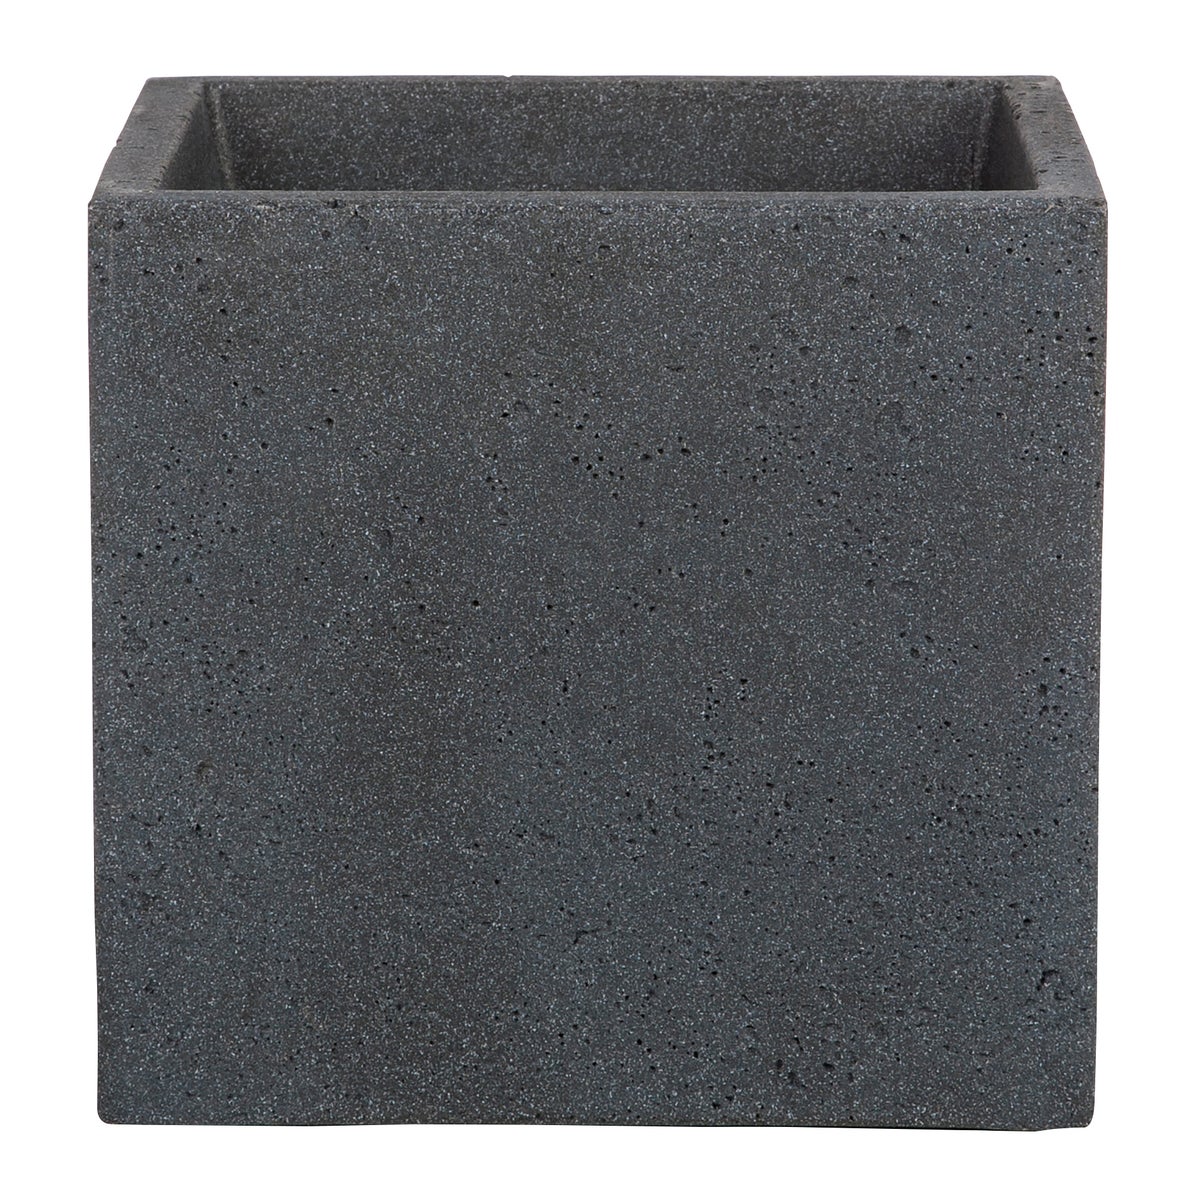 Scheurich C-Cube 40, Pflanzgefäß/Blumentopf/Pflanzkübel, quadratisch,  aus Kunststoff Farbe: Stony Black, 38 cm Durchmesser, 33 cm hoch, 44 l Vol.